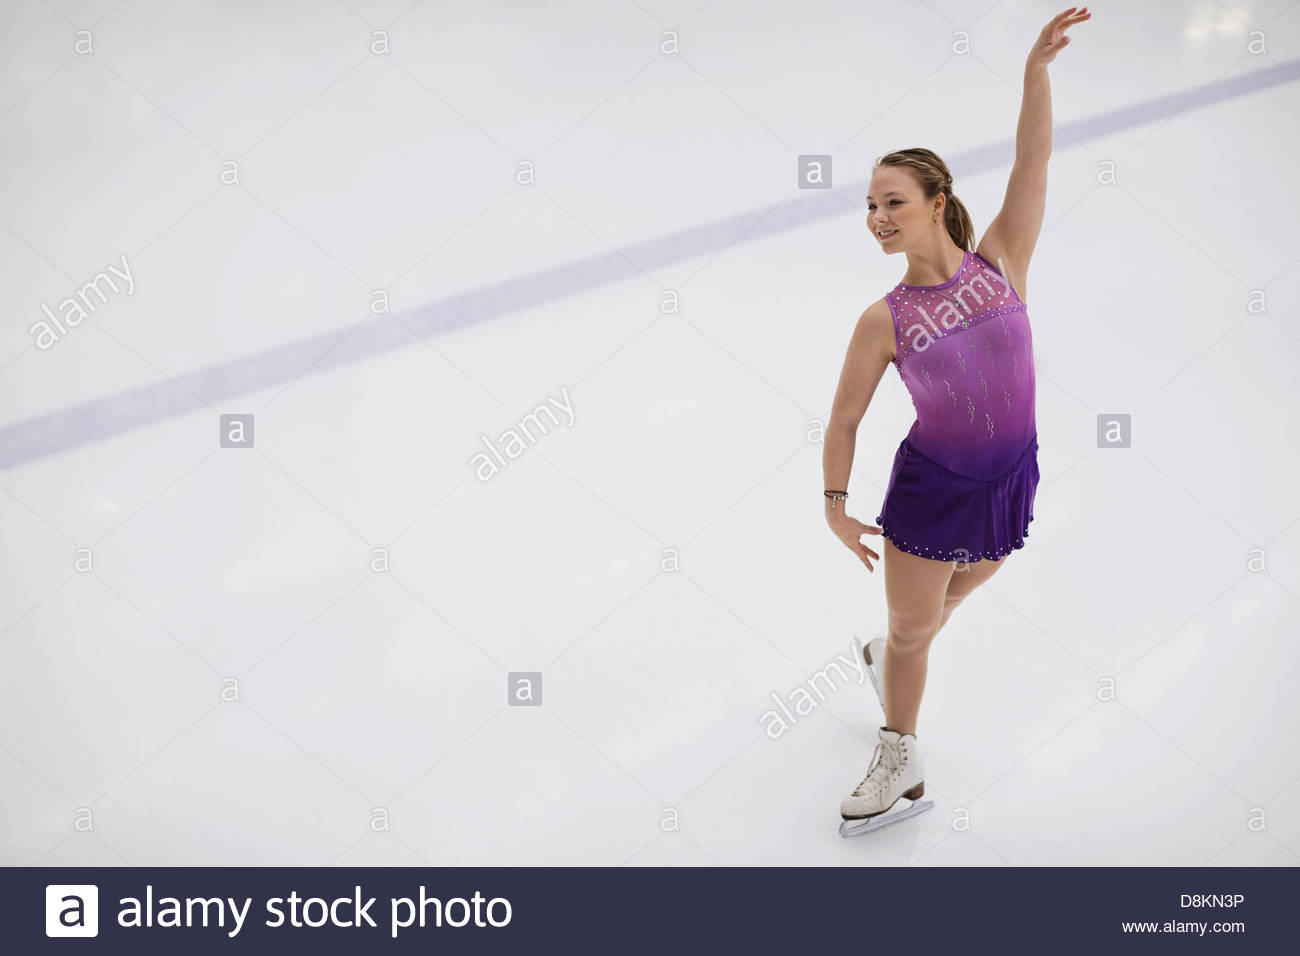 Weibliche Abbildung Skater, die Durchführung von Routine in Eisbahn Stockfoto